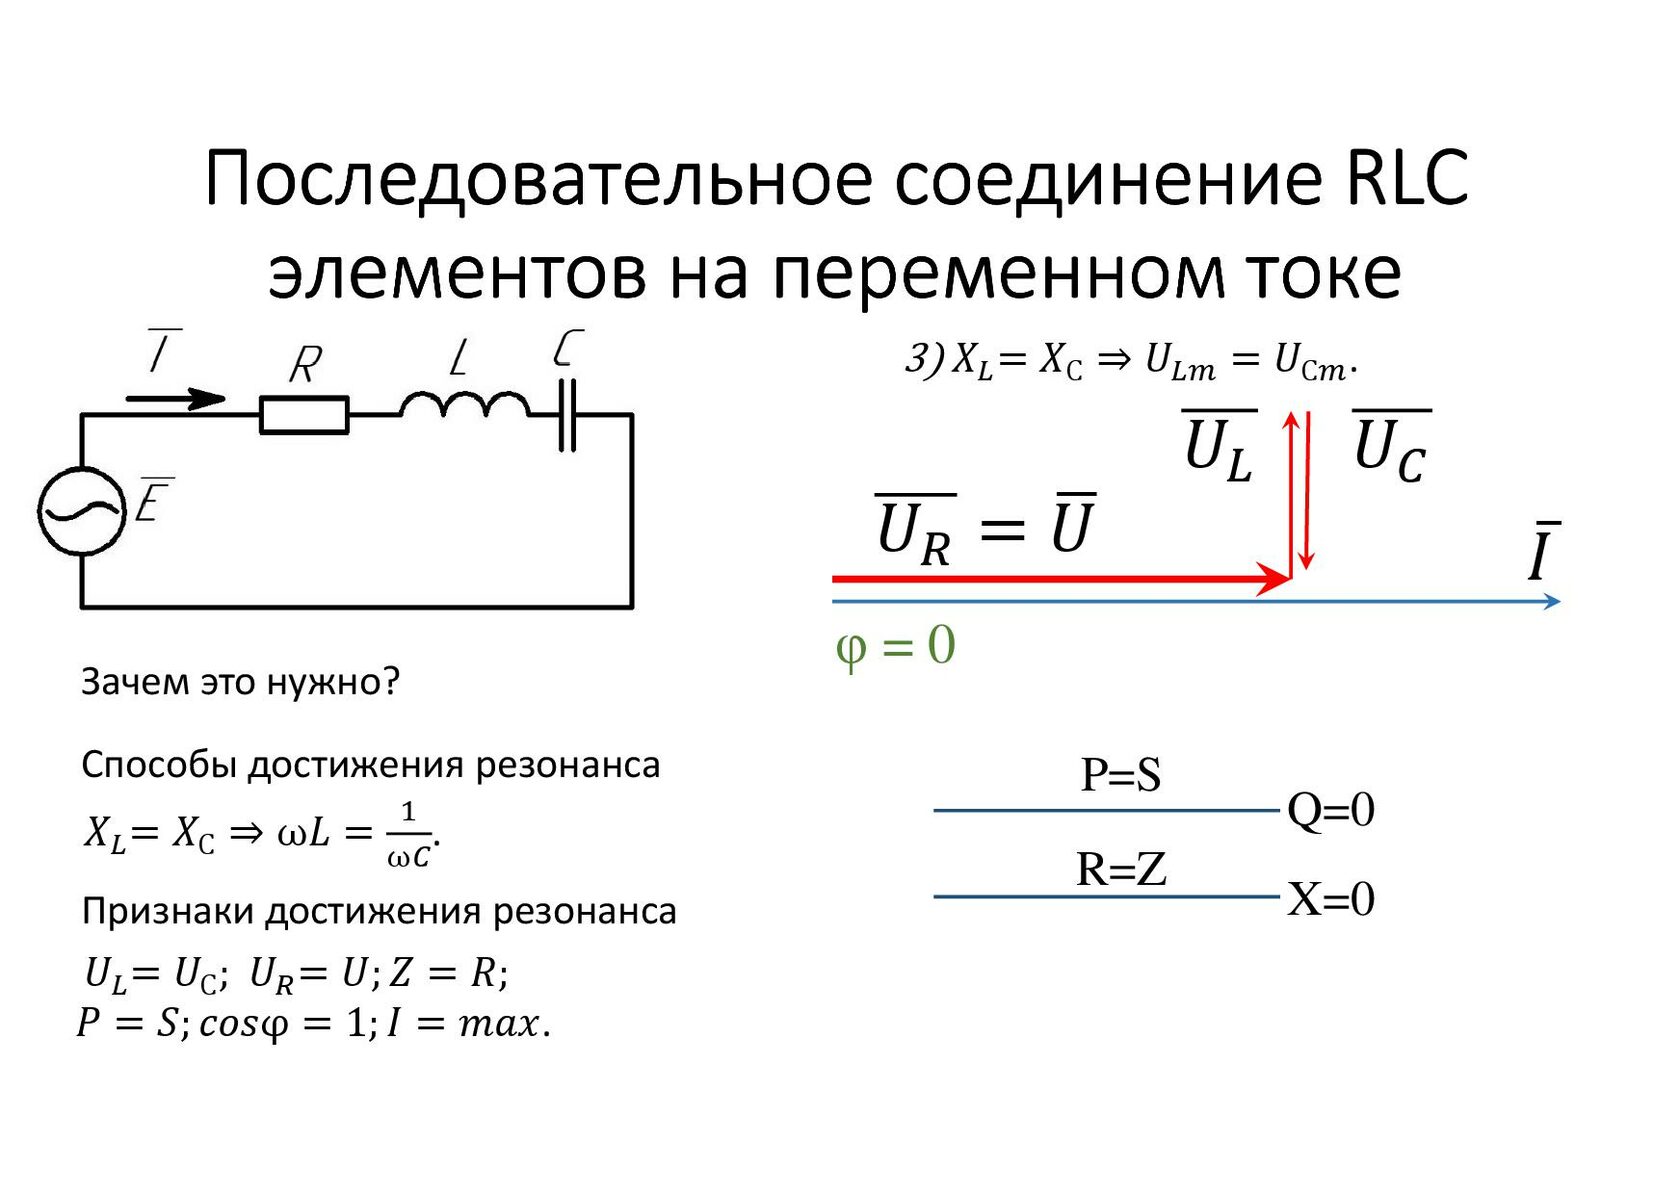 Полное сопротивление цепи полная мощность цепи. RLC цепи переменного тока. Электрические цепи с параллельным соединением RLC. Последовательное подключение в переменном токе. Электрическая цепь с параллельным соединением RLC-элементов.